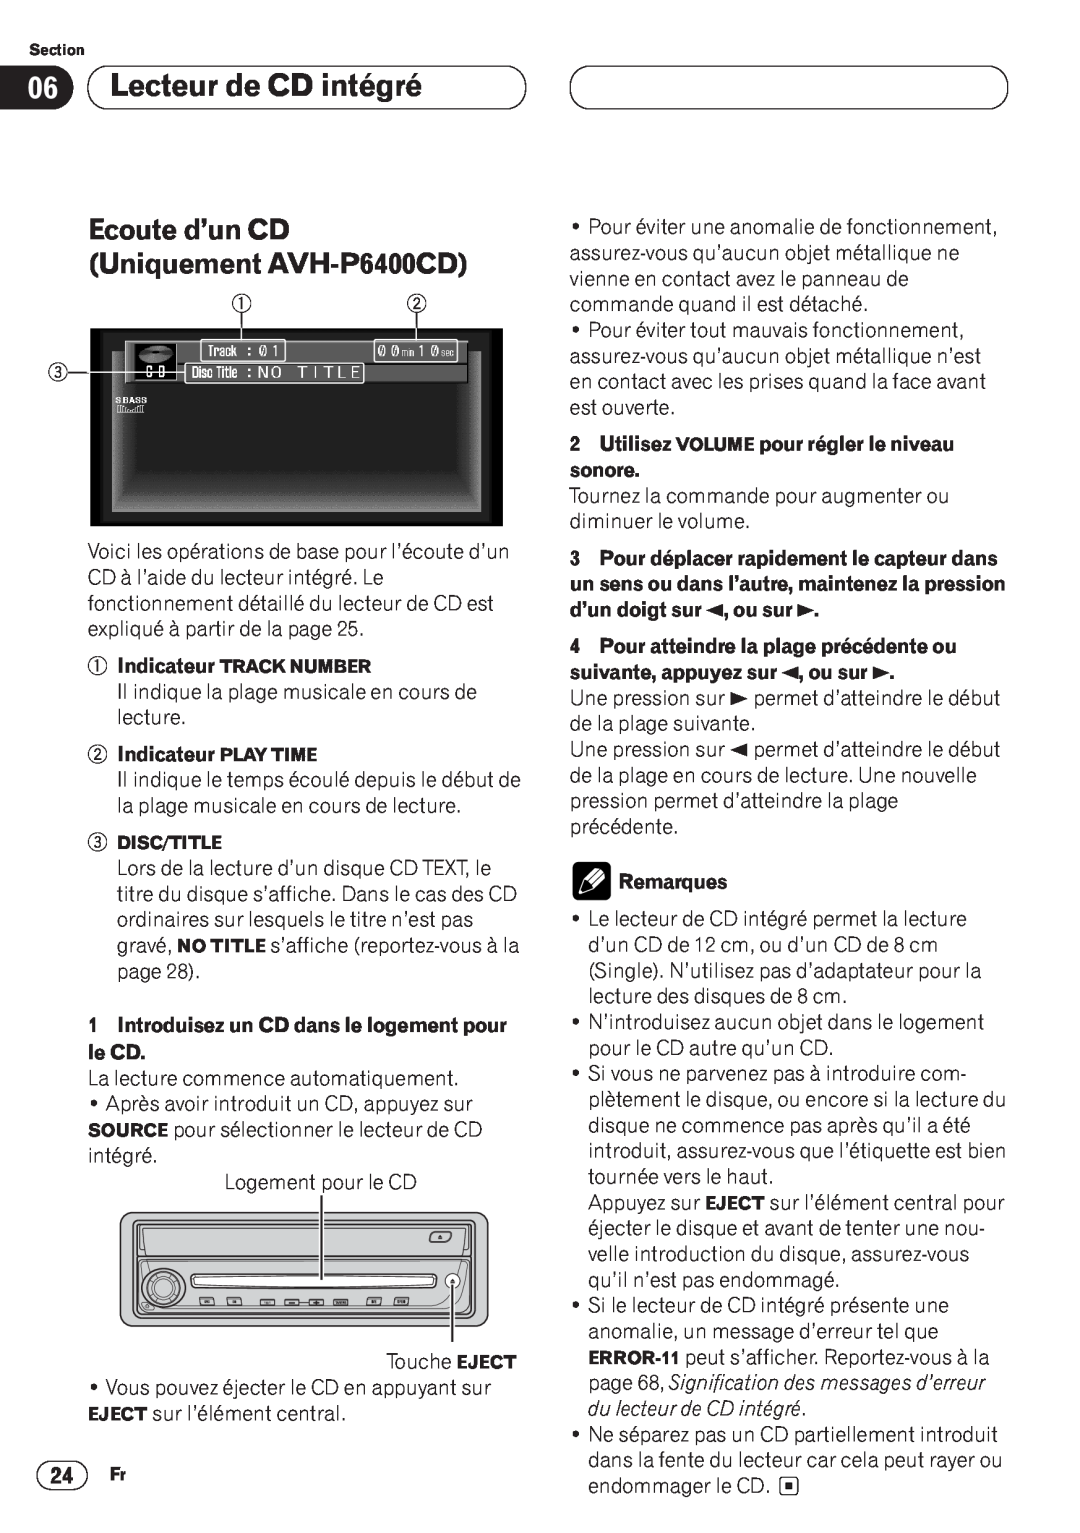 Pioneer operation manual Lecteur de CD intégré, Ecoute d’un CD Uniquement AVH-P6400CD, Indicateur PLAY TIME, Remarques 